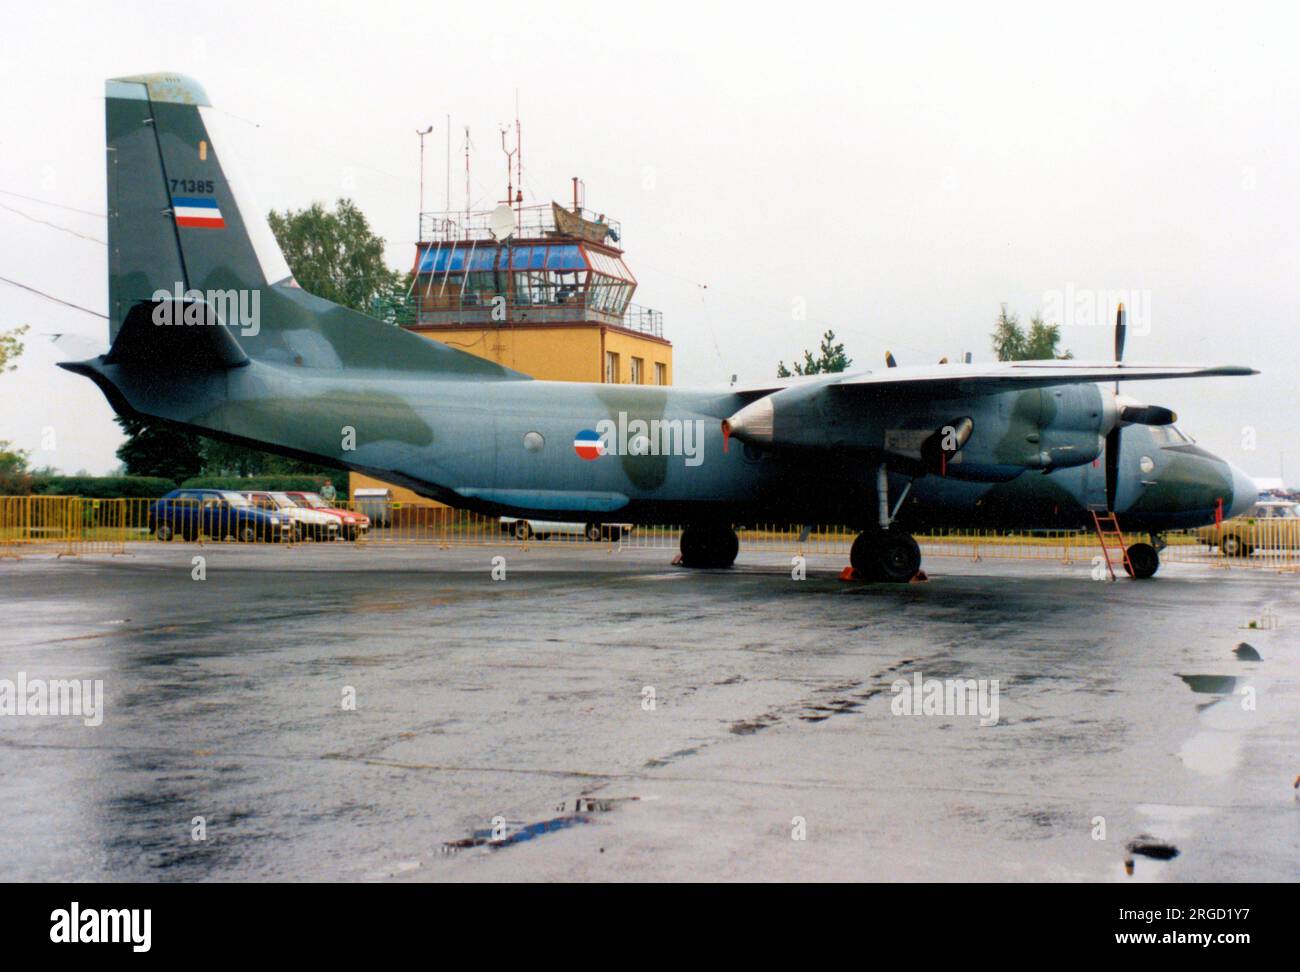 Aeronautica militare serba - Antonov An-26 71385 (msn 38-07) Foto Stock